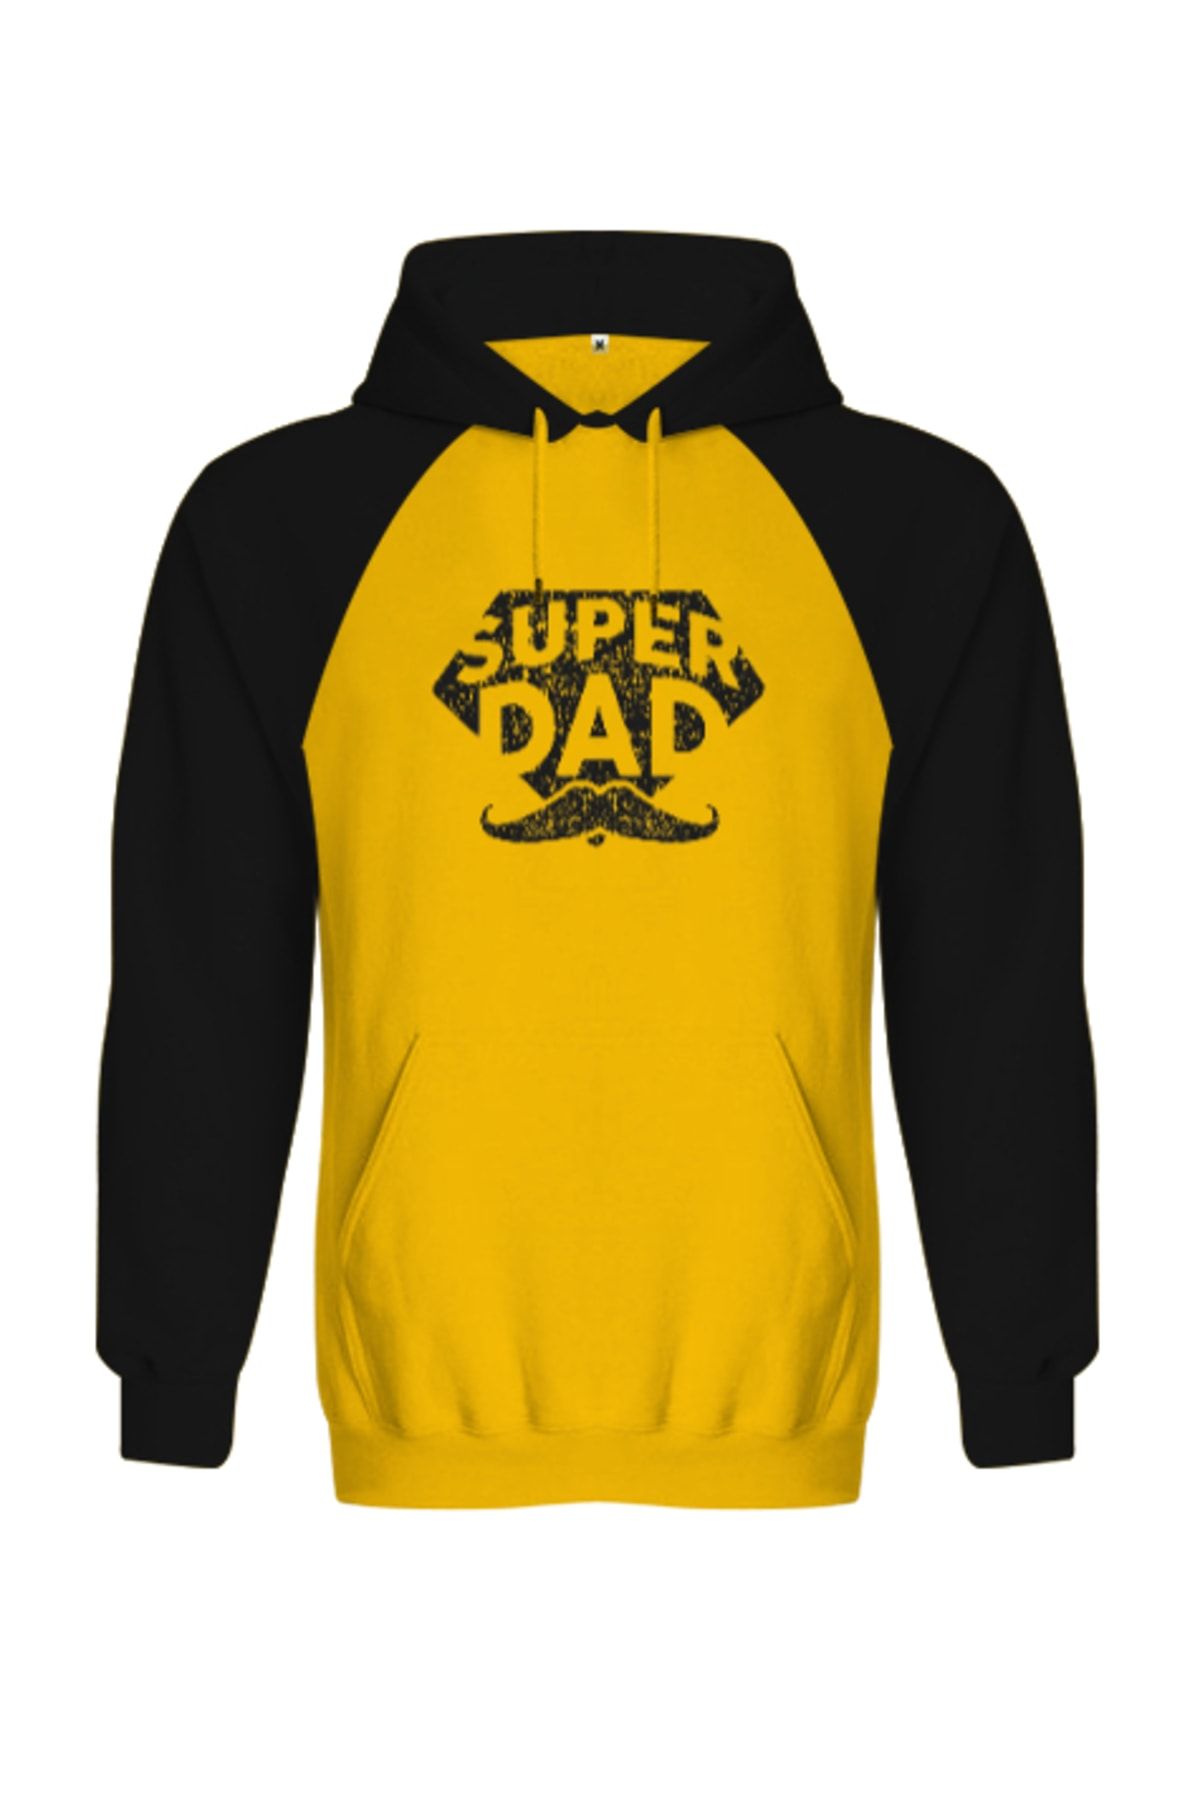 Tisho Super Dad - Süper Baba, Babalar Günü Baskılı Sarısiyah Orjinal Reglan Hoodie Unisex Sweatshirt